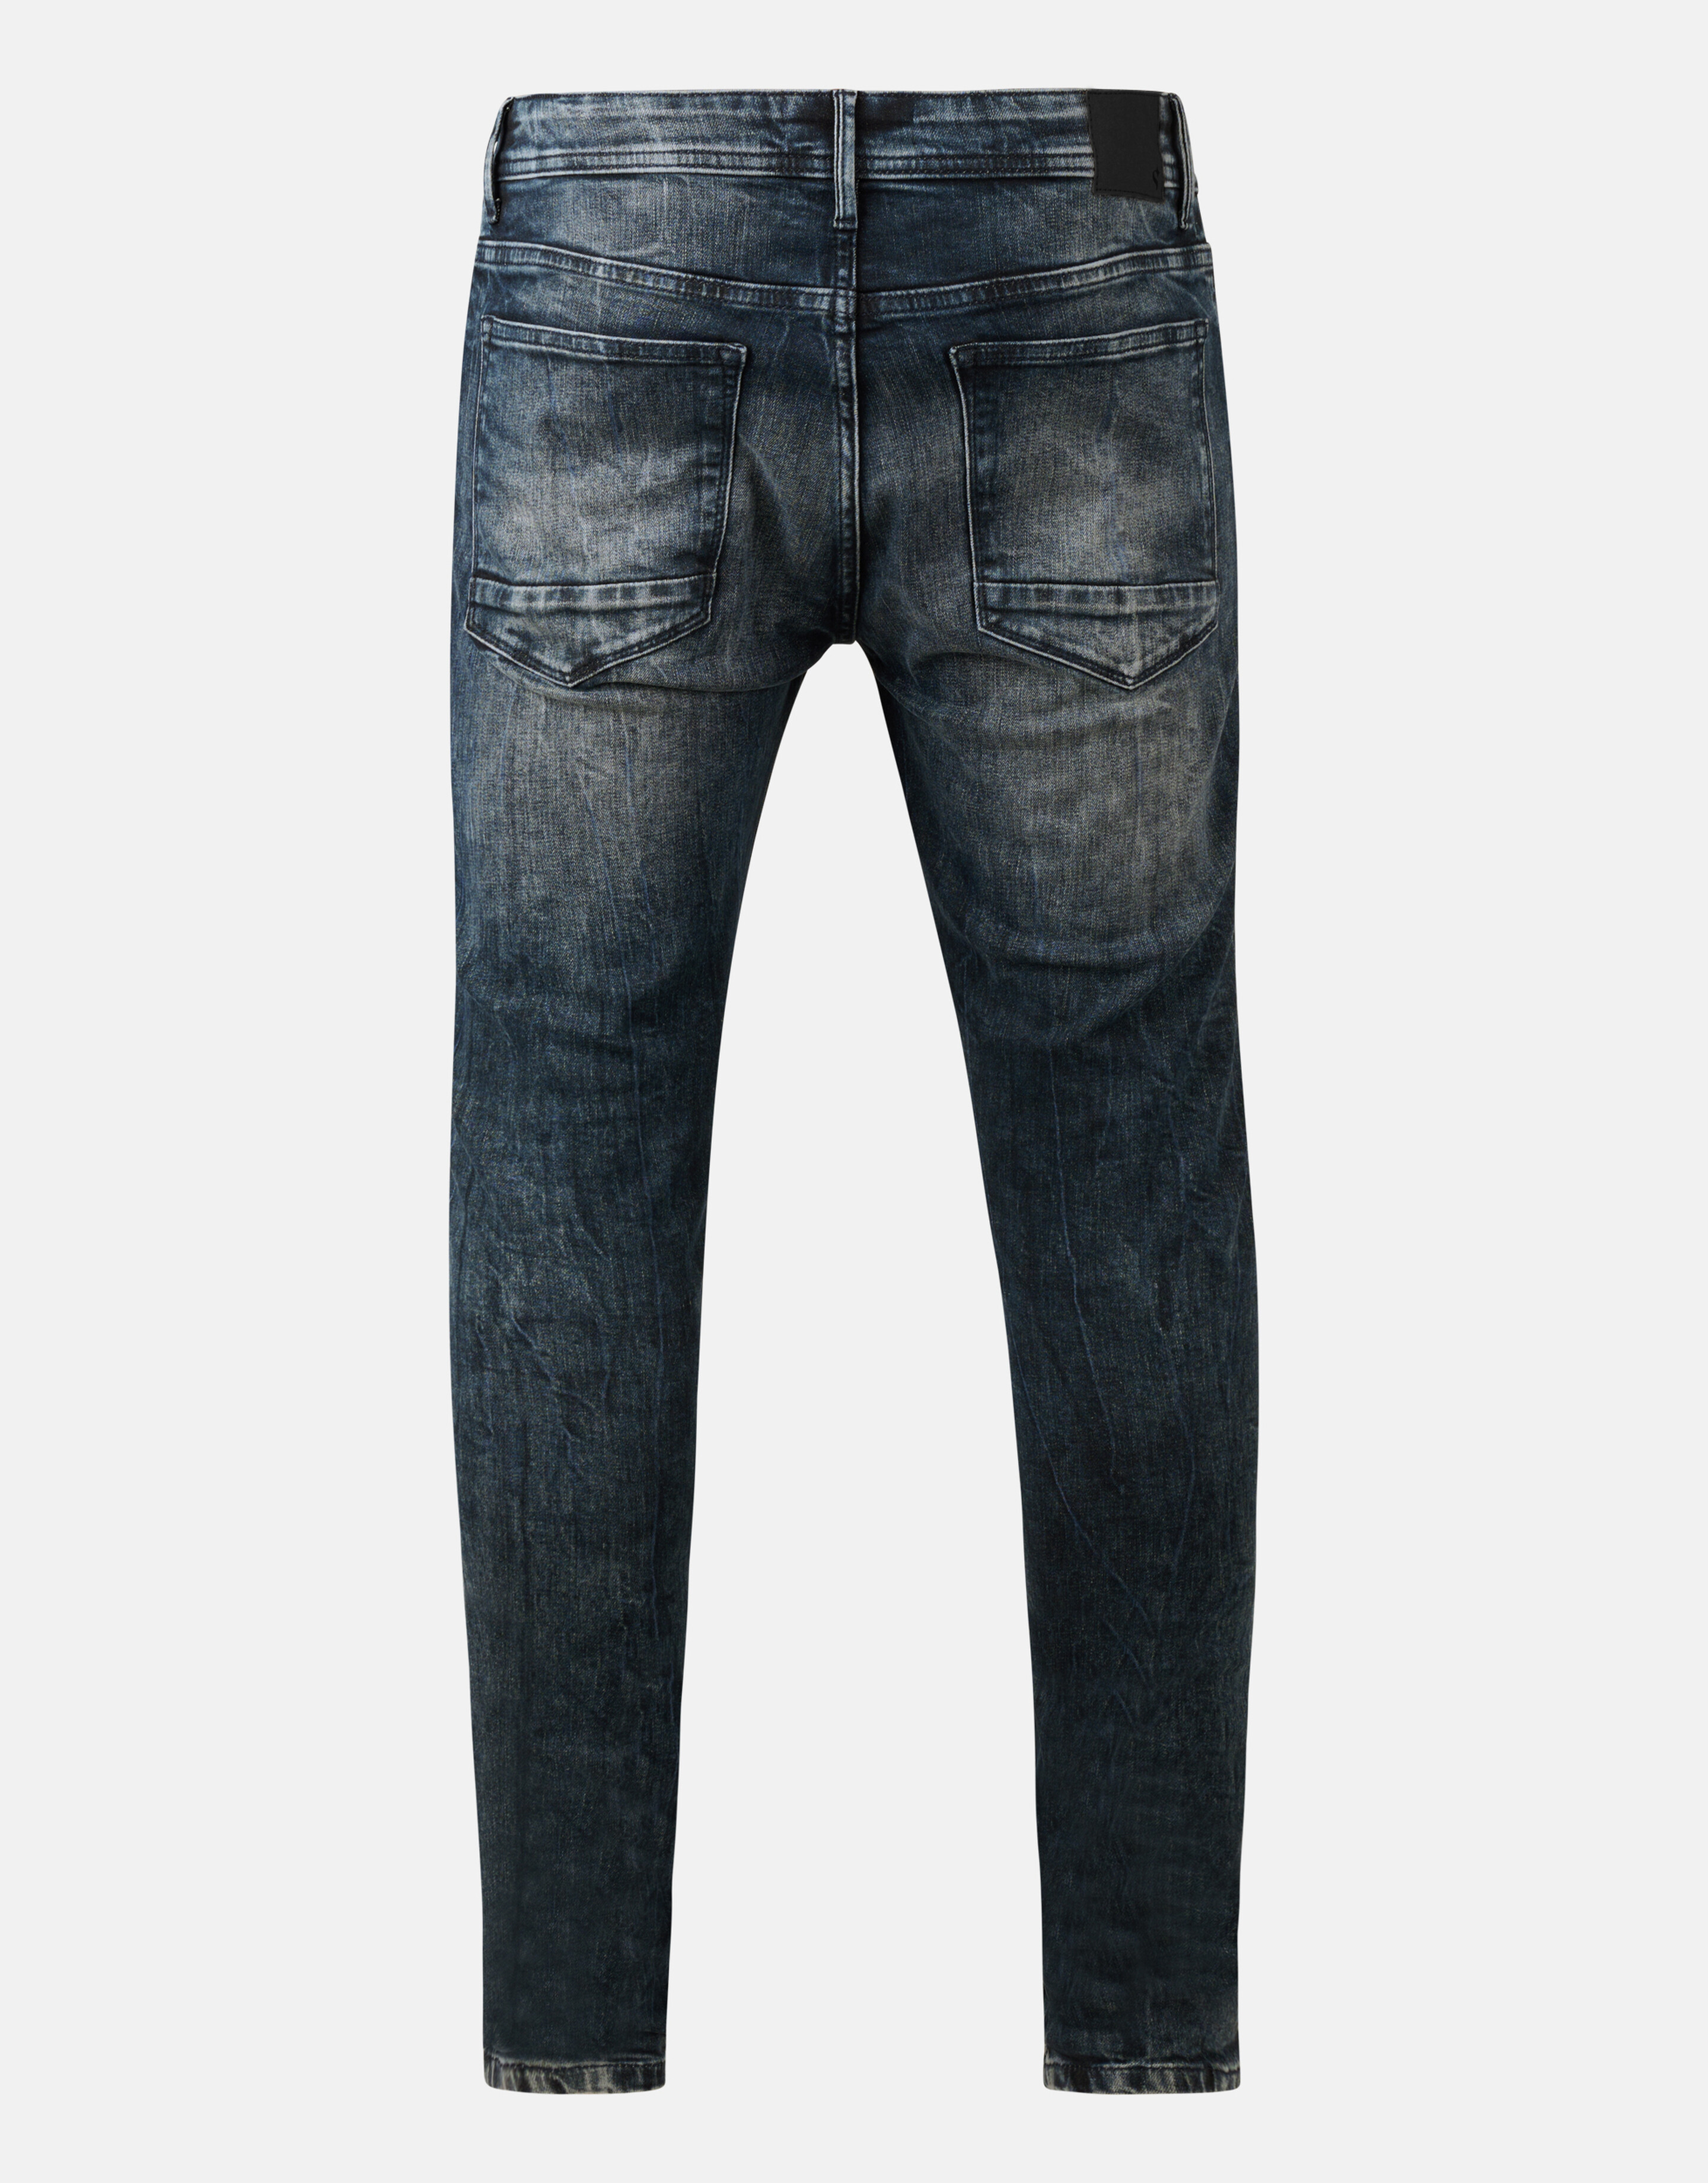 Skinny Jeans Blauw/Grijs L34 SHOEBY MEN